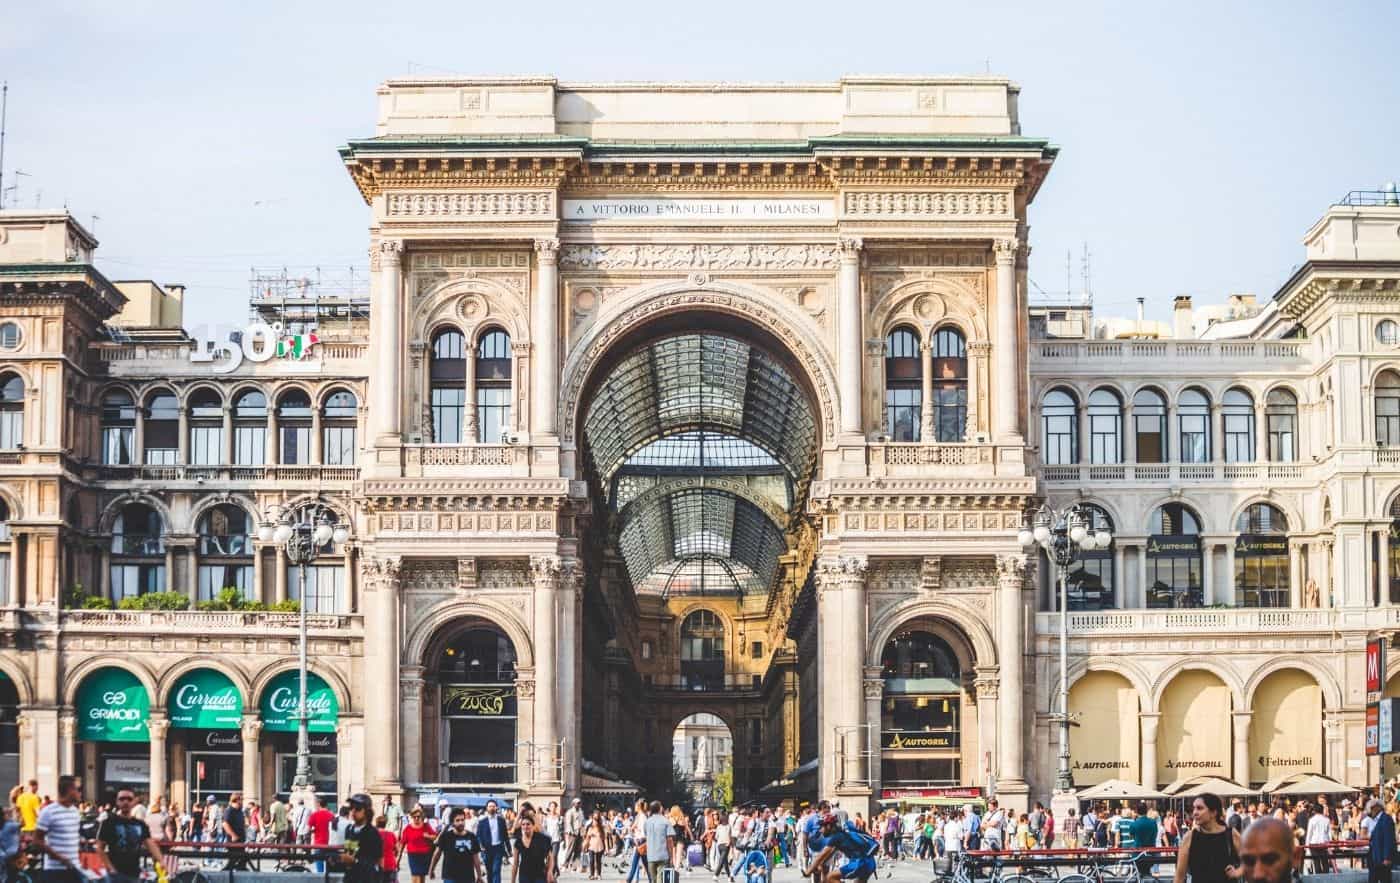 Exterior of the Galleria Vittorio Emanuele II shopping arcade.